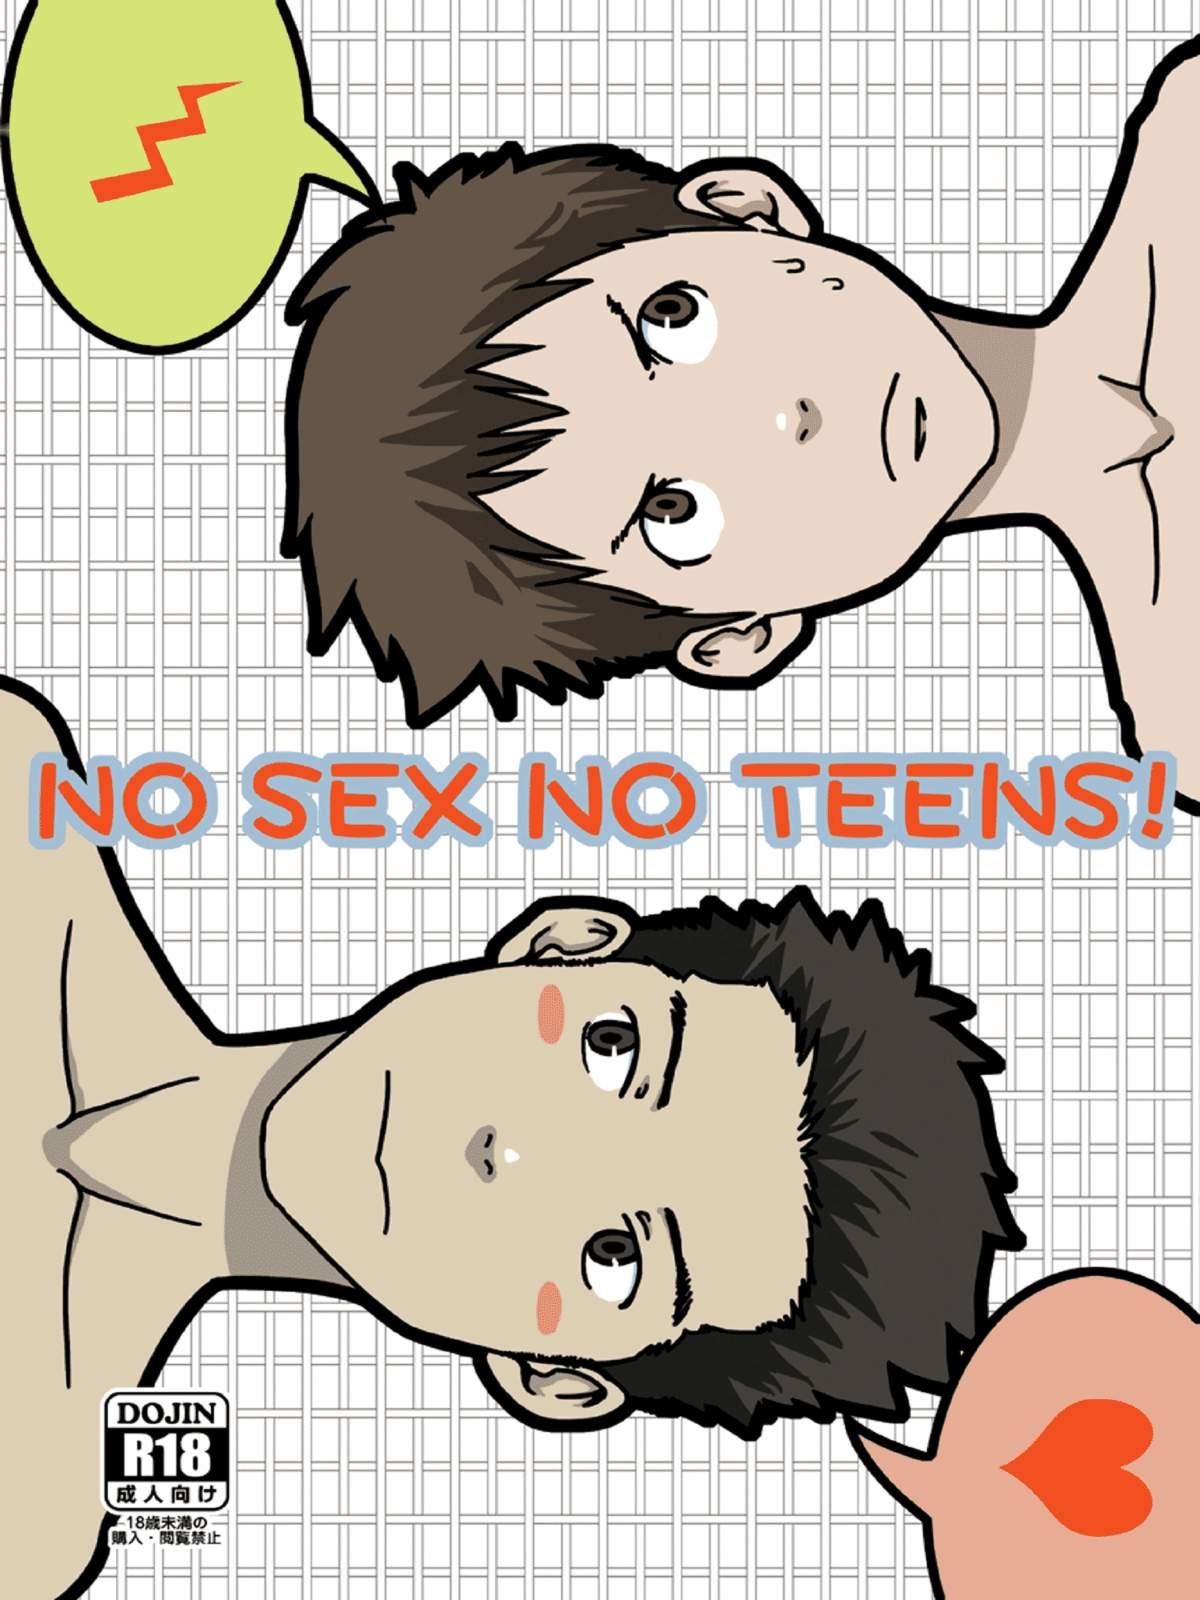 NO SEX NO TEENS! 0